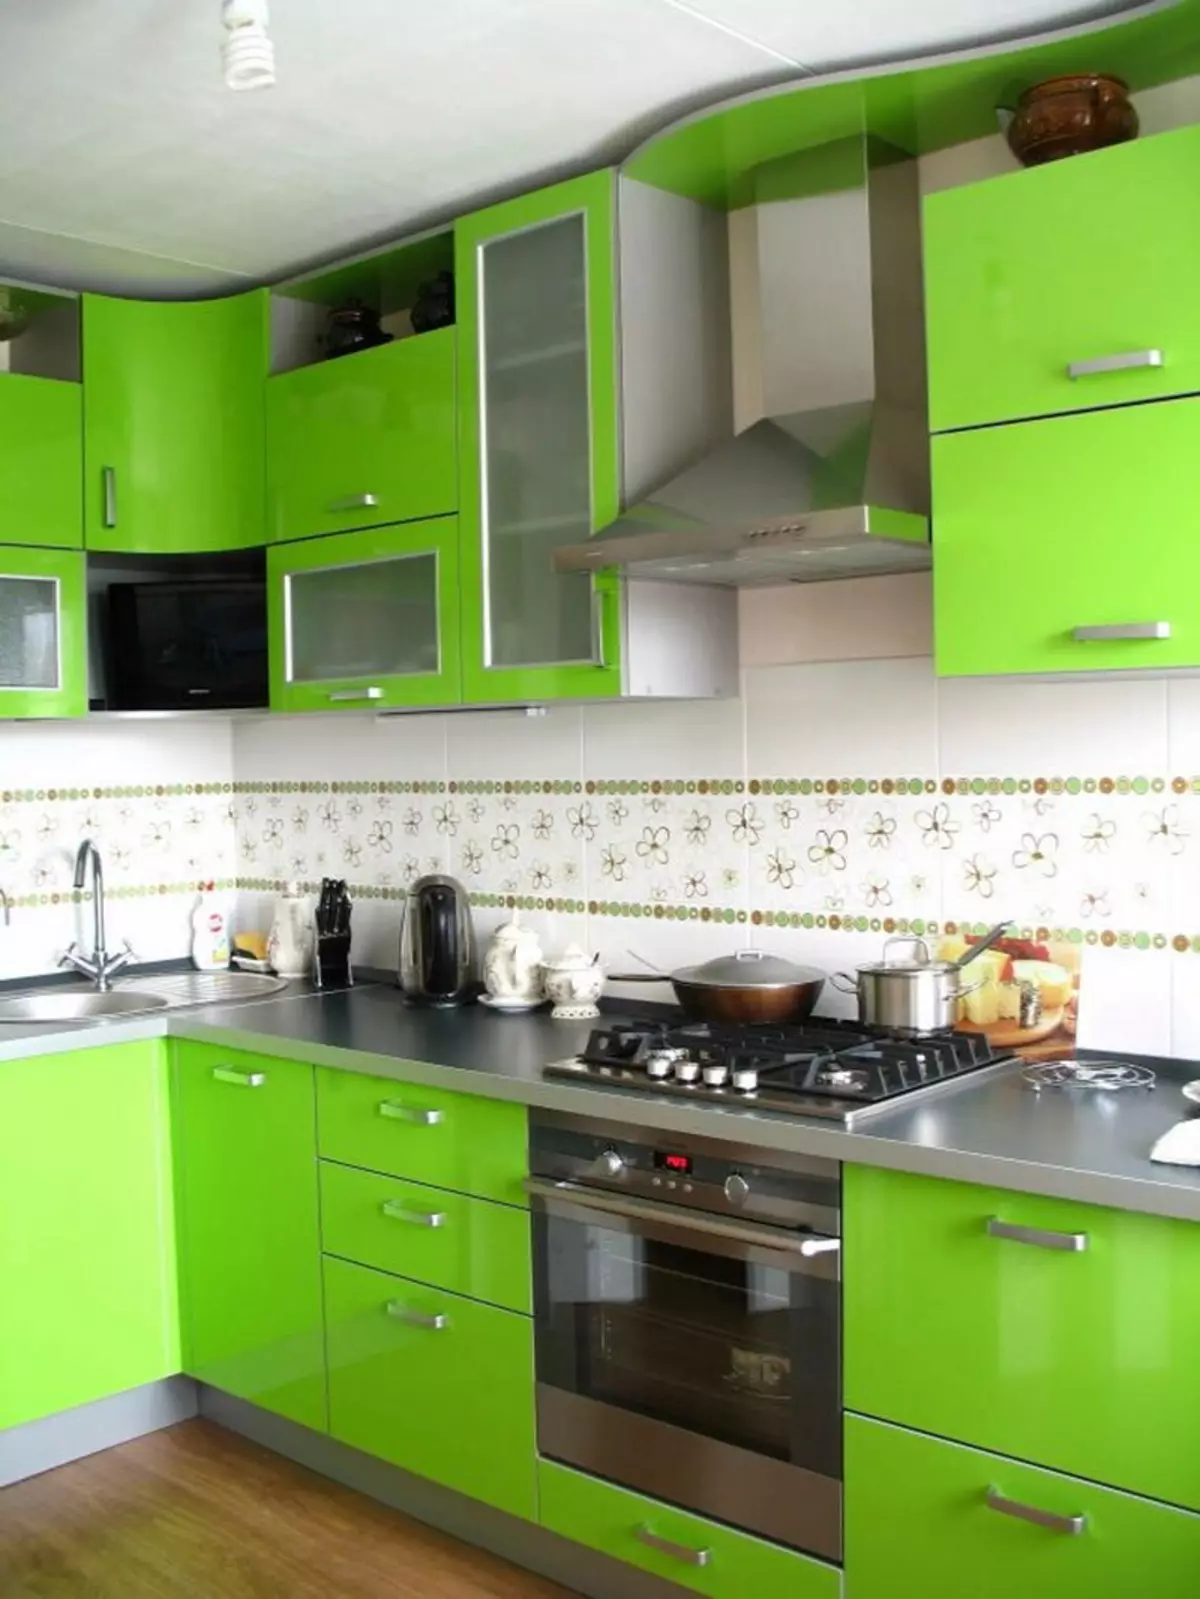 Grönt kök (111 bilder): Grönt köksheadset i inredning, grönt tapetval, grågrön och mörkgrön, svart och grönt och grönt brunt kök 9554_36